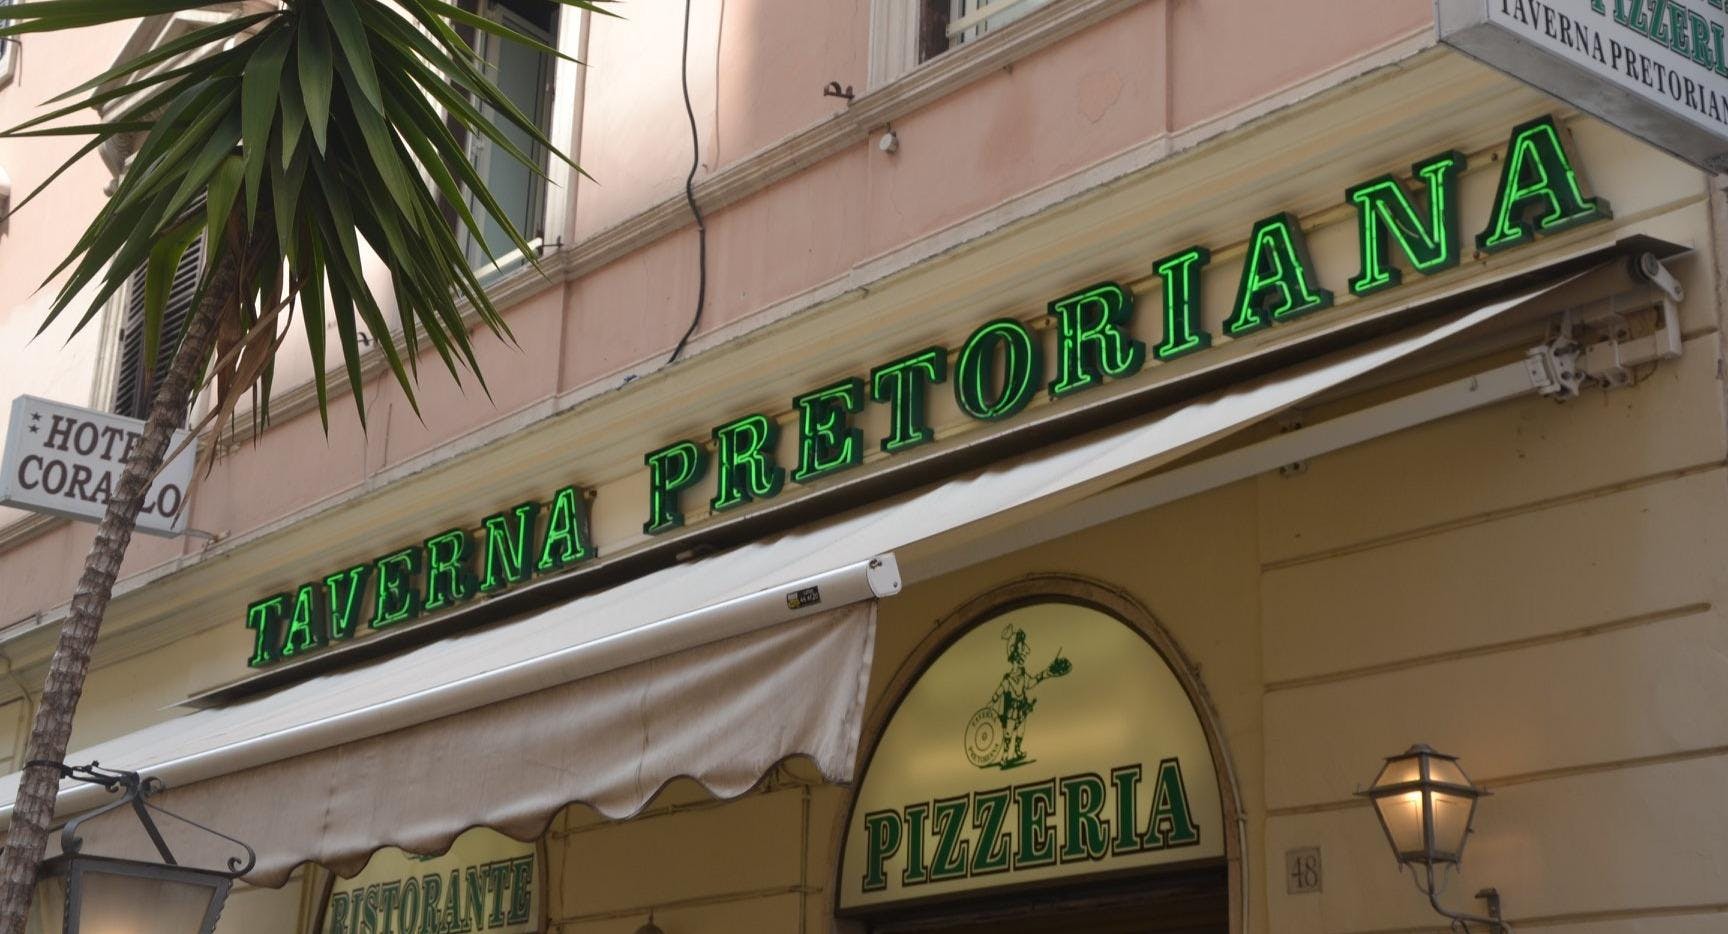 Photo of restaurant Taverna Pretoriana in Castro Pretorio, Rome